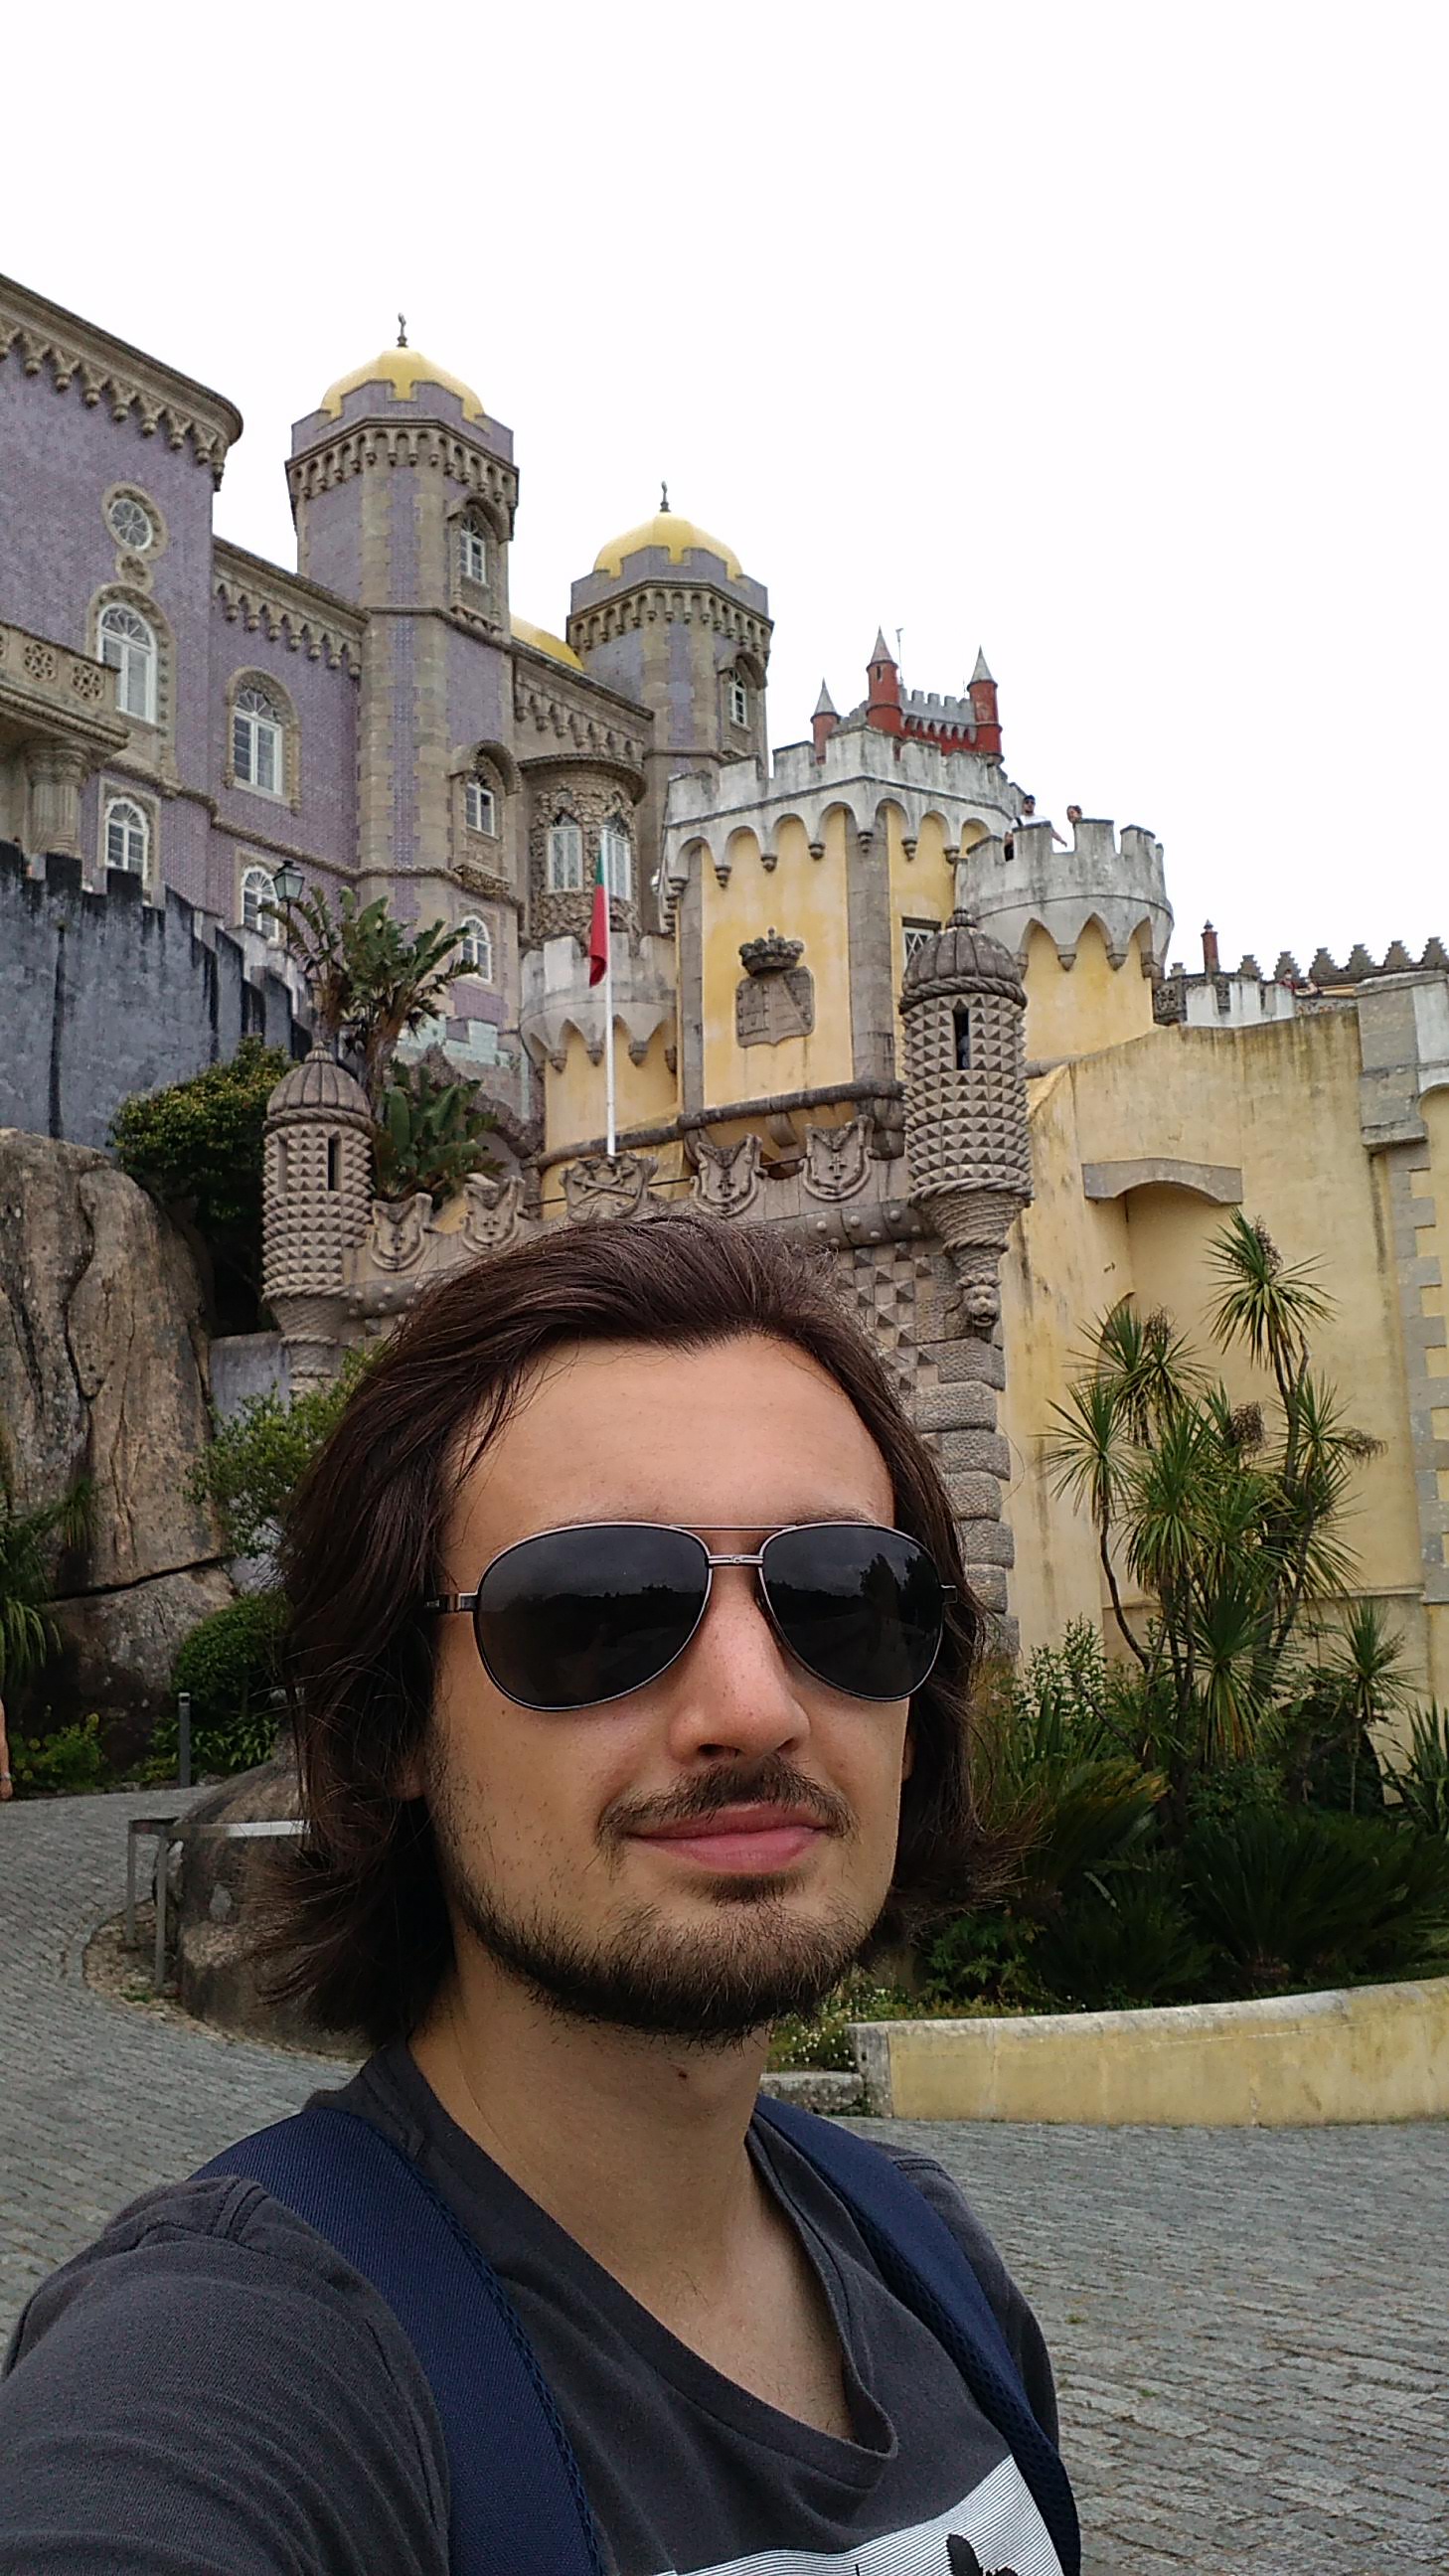 O aluno também visitou o Castelo da Pena em Sintra